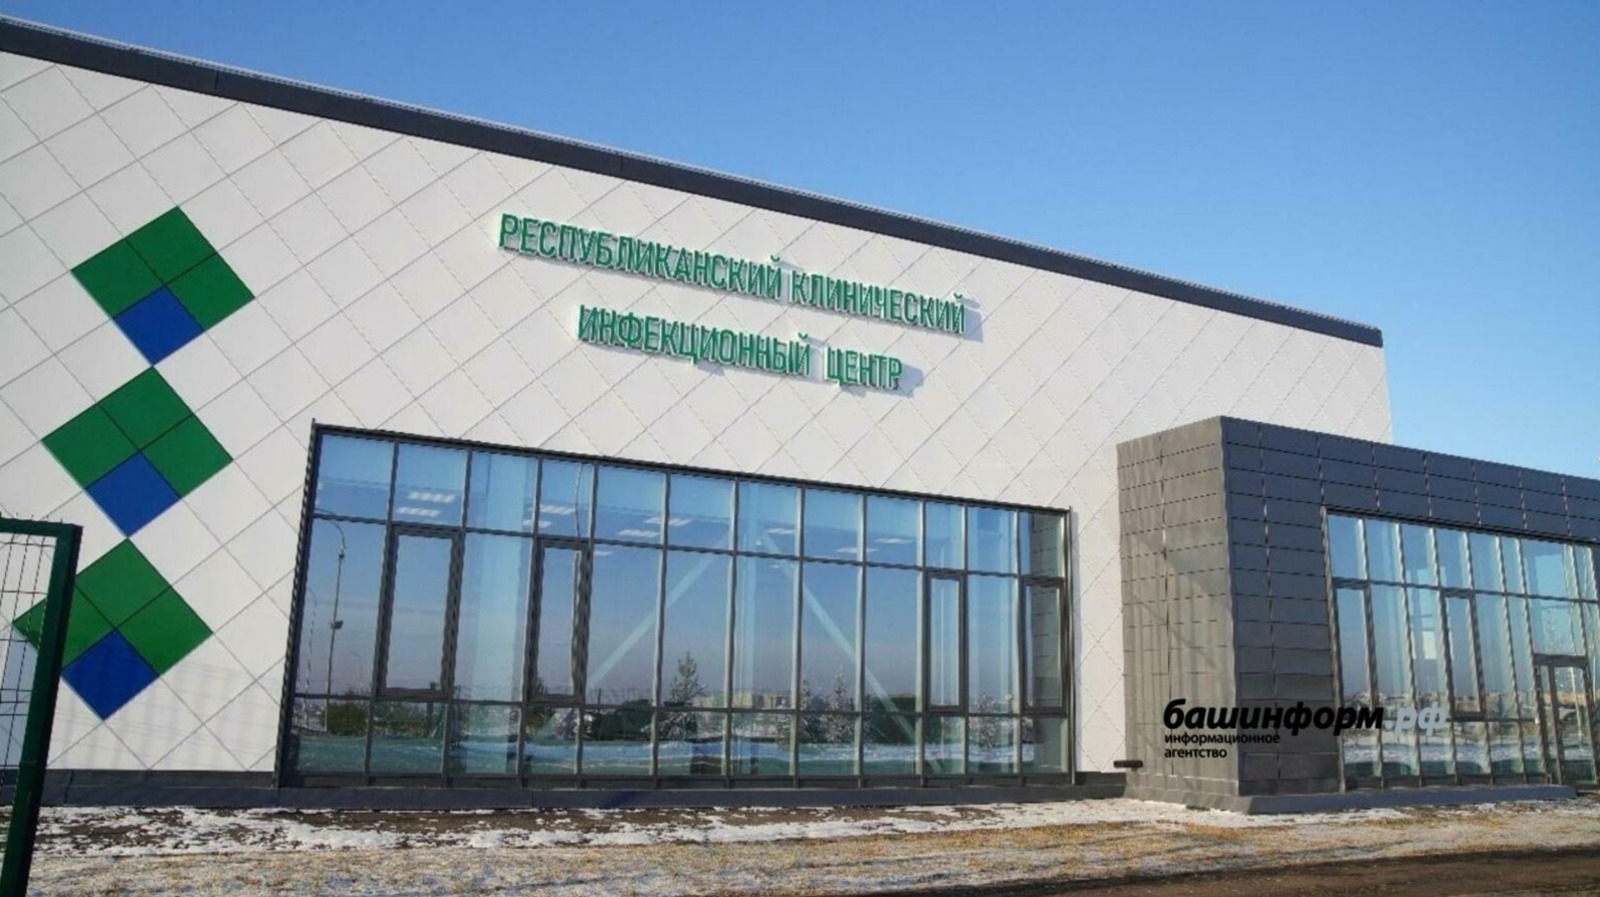 Вторые сутки подряд в Башкирии растет число ковид-заболевших